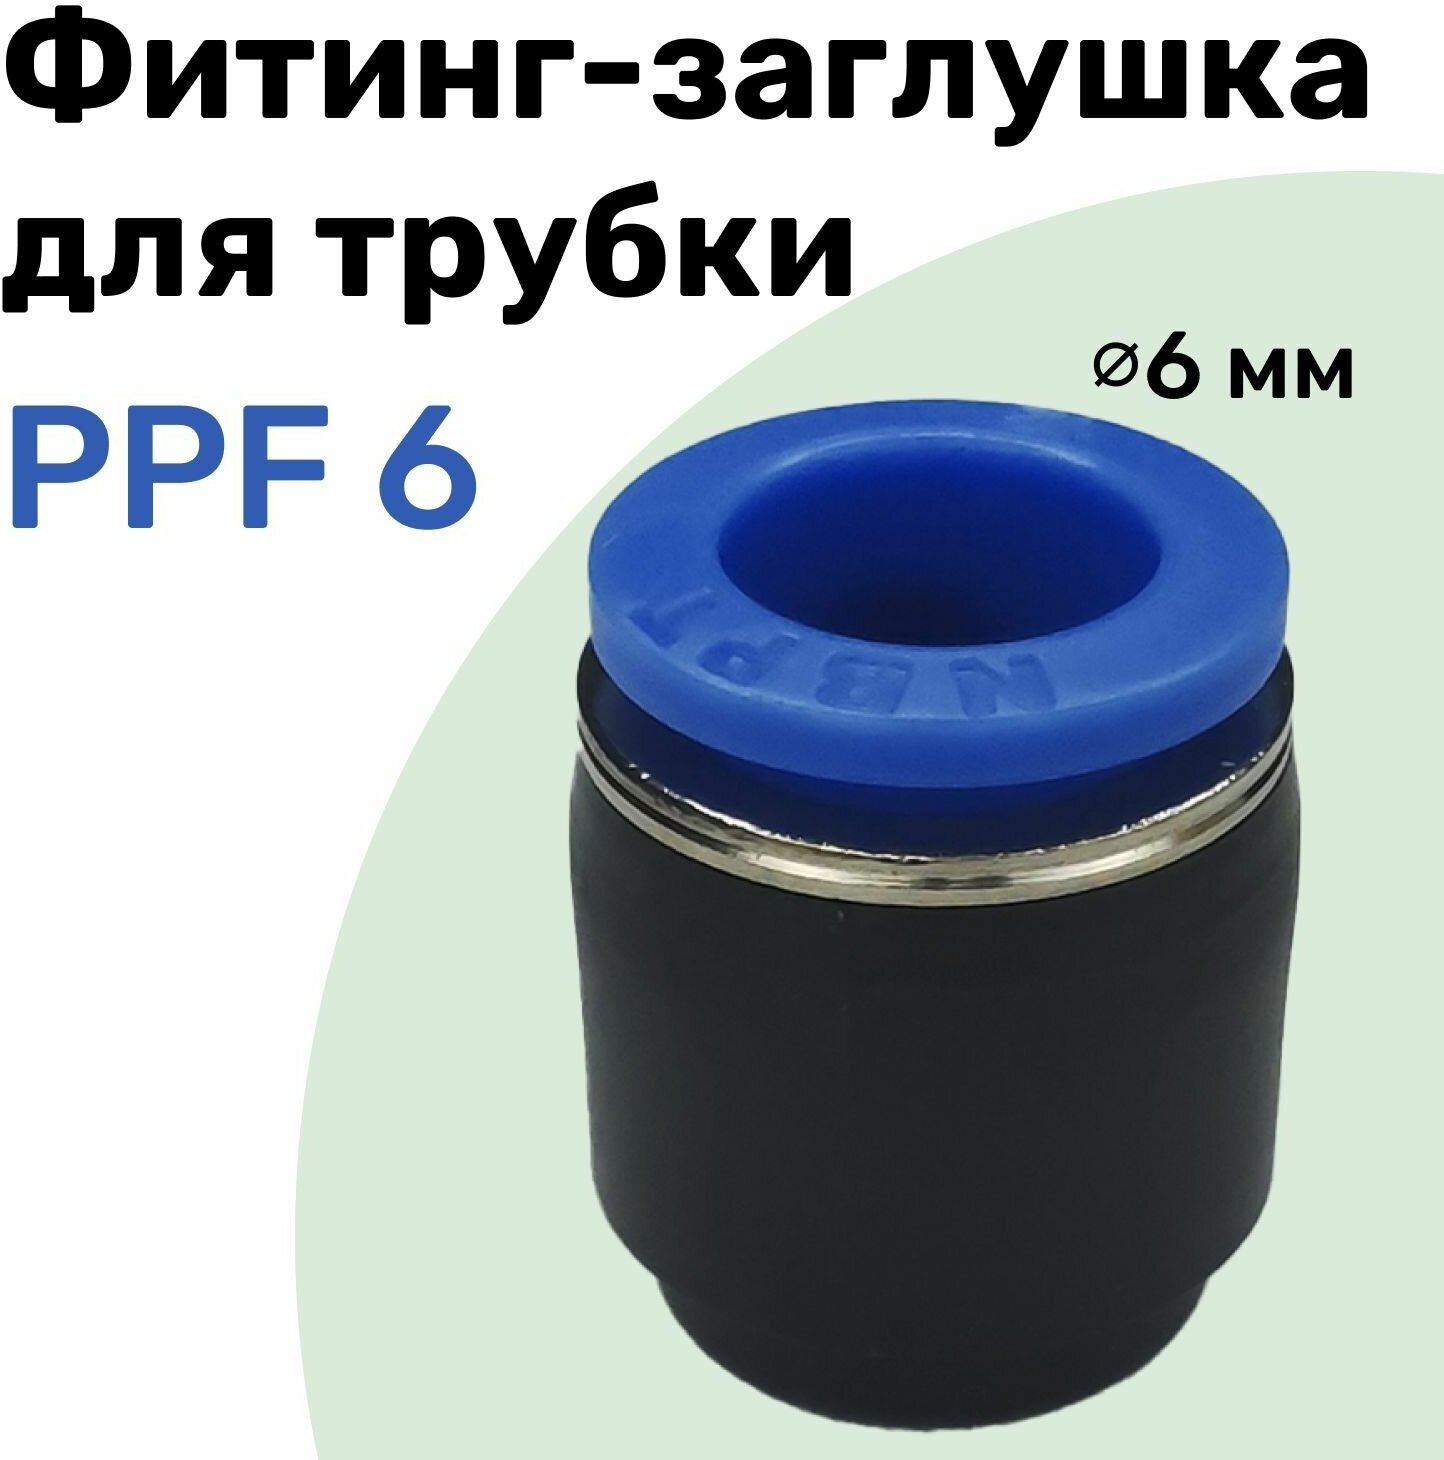 Заглушка для пневматической трубки PPF 6 мм NBPT